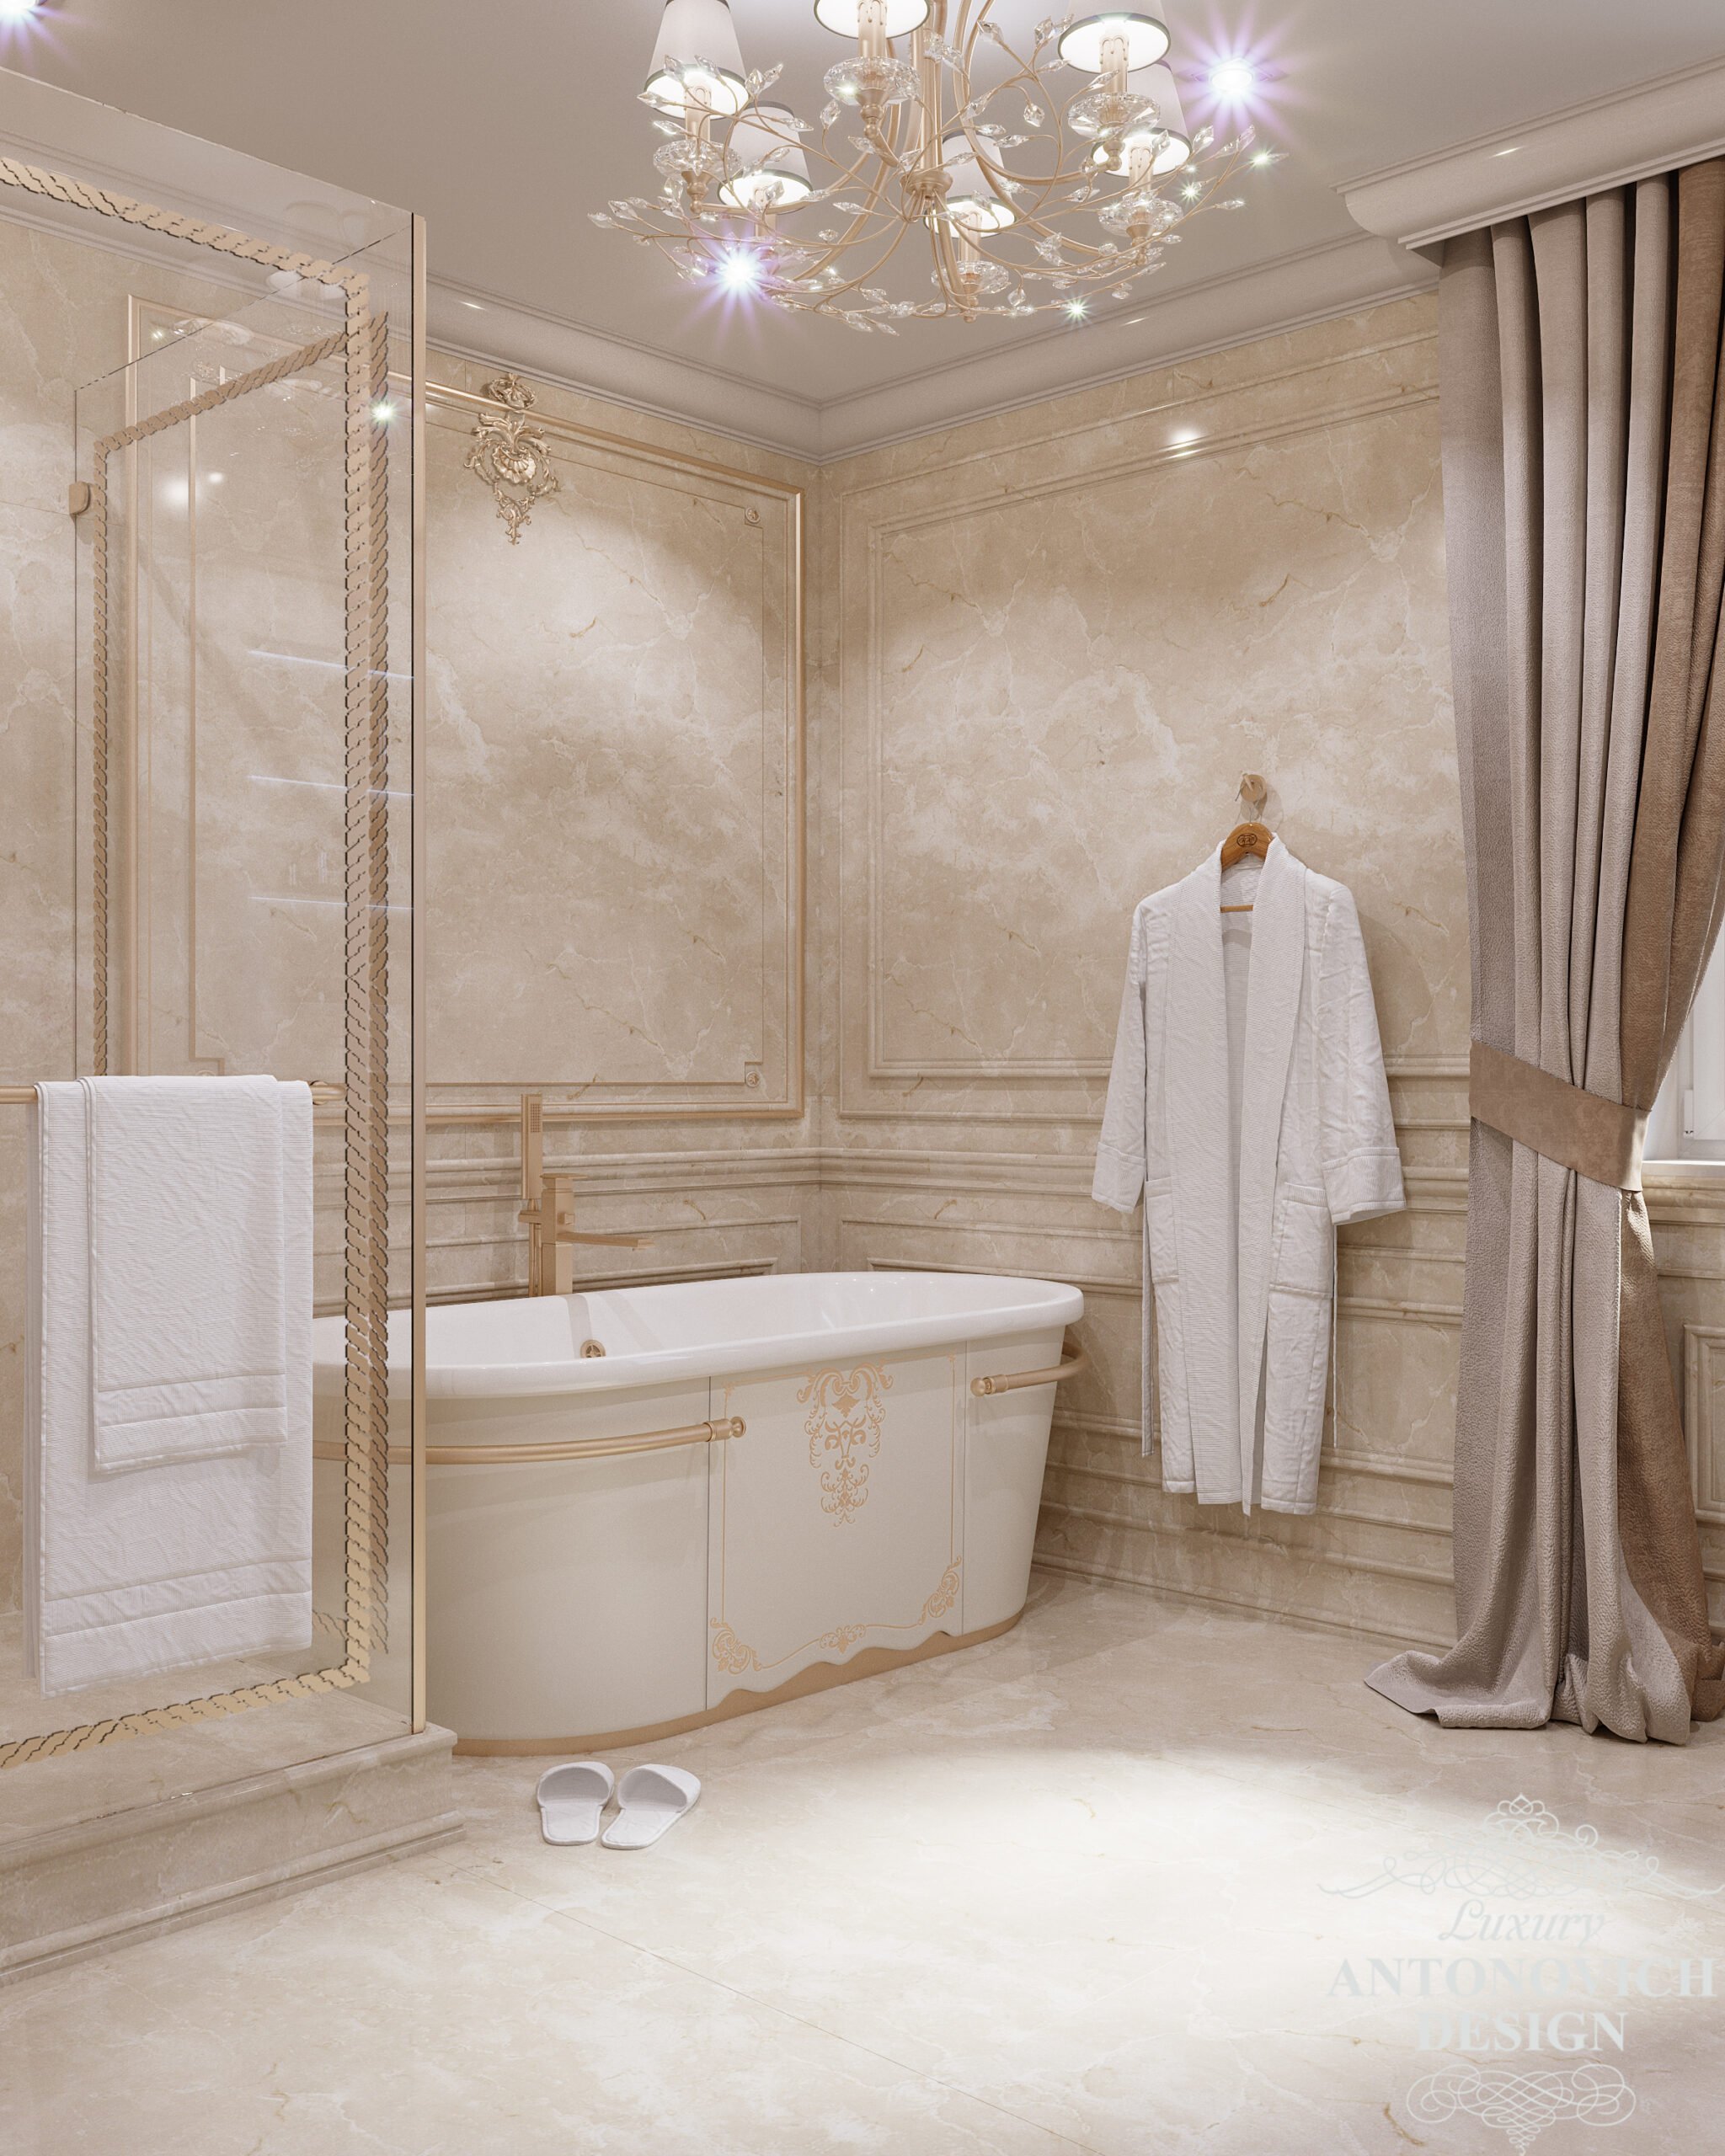 Вітончена класична ванна у світлих відтінках з обробка з дорогих матеріалів в дізайні приватного будинку